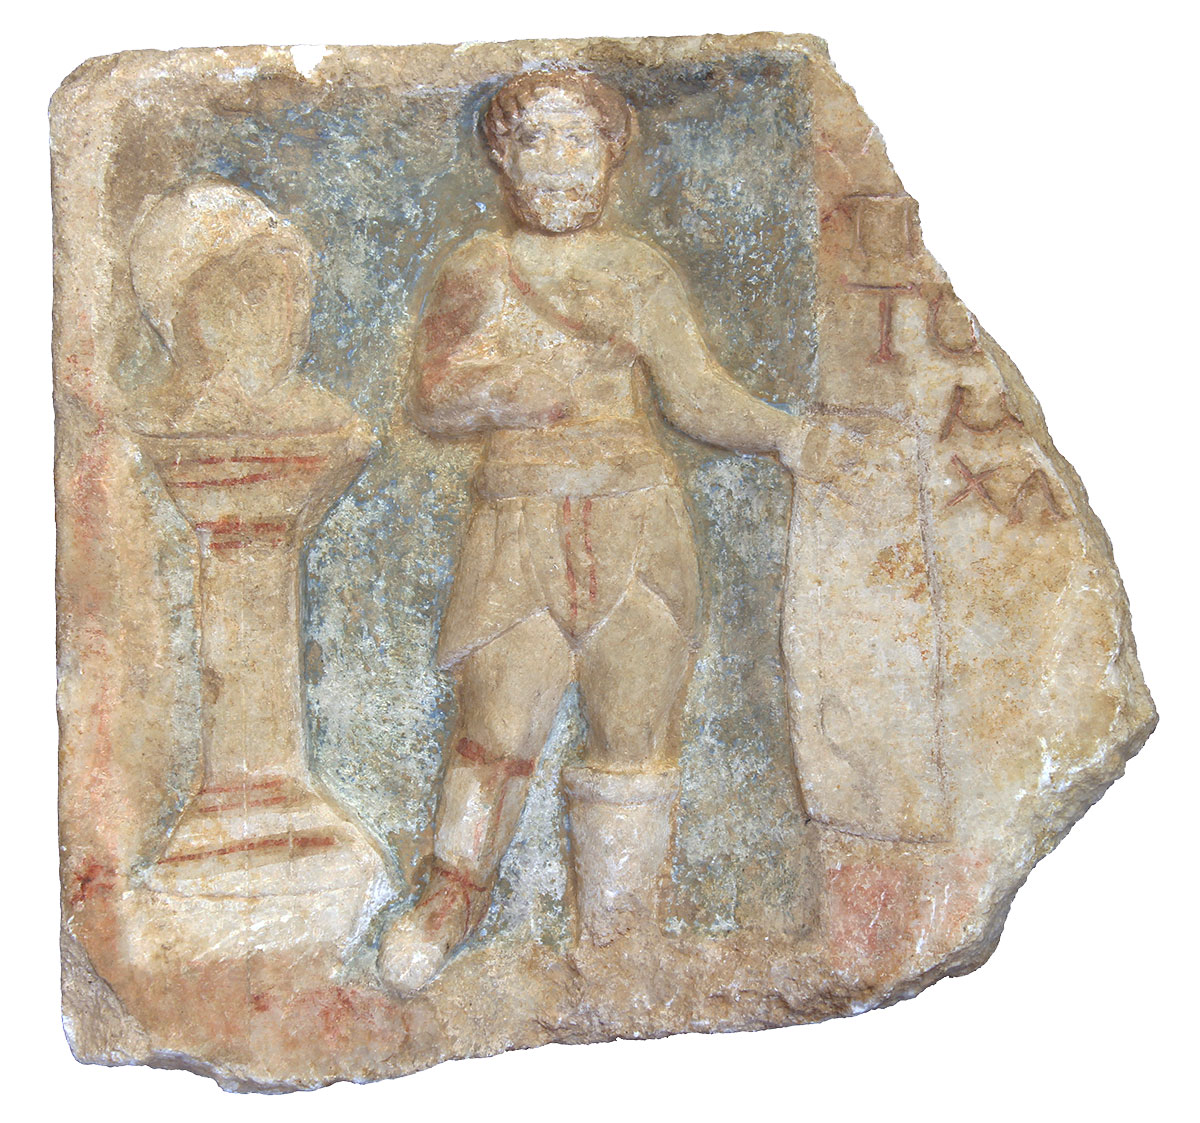 Ταφικό ανάγλυφο μονομάχου (ΜΘ 28158), Αρχαιολογικό Μουσείο Θεσσαλονίκης. © ΑΜΘ - ΥΠΠΟ.